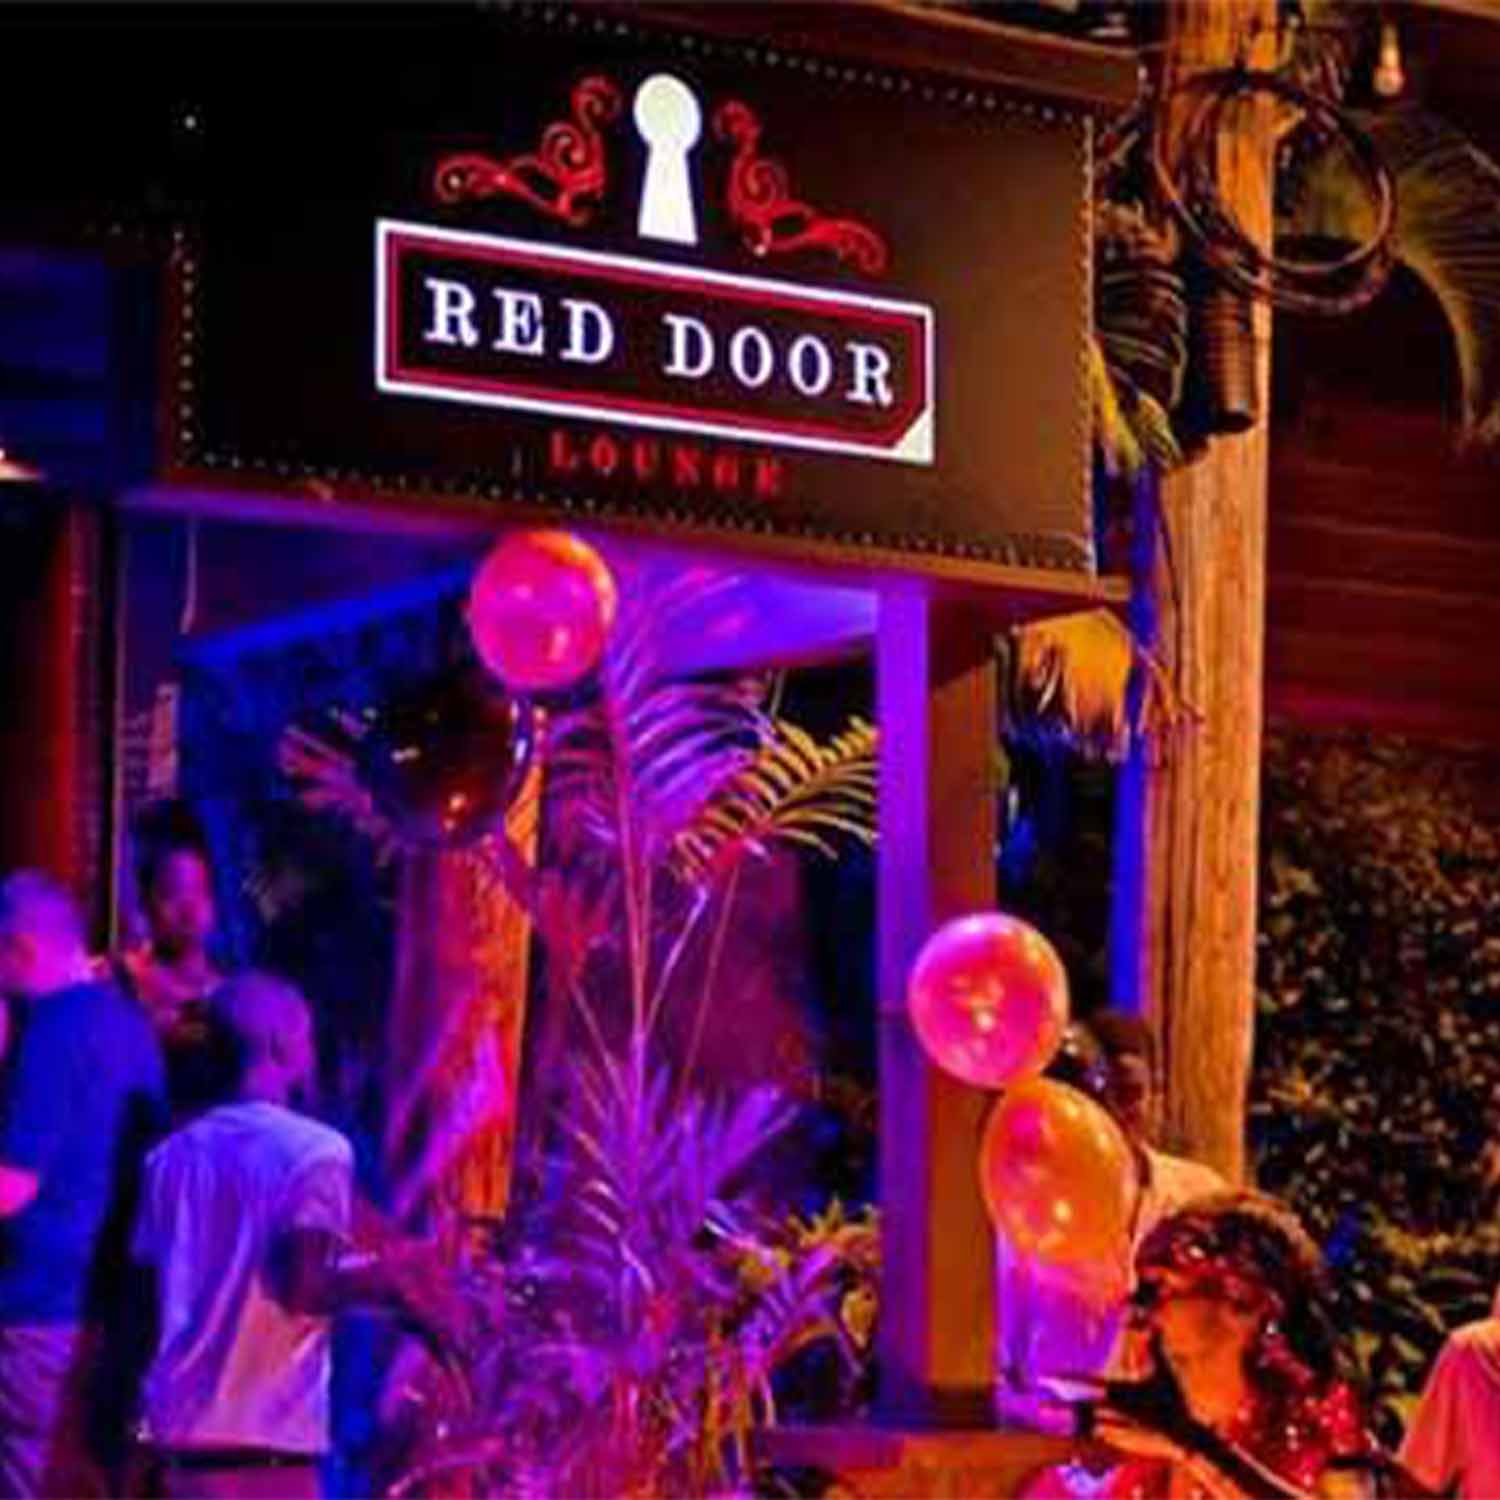 Red Door Lounge